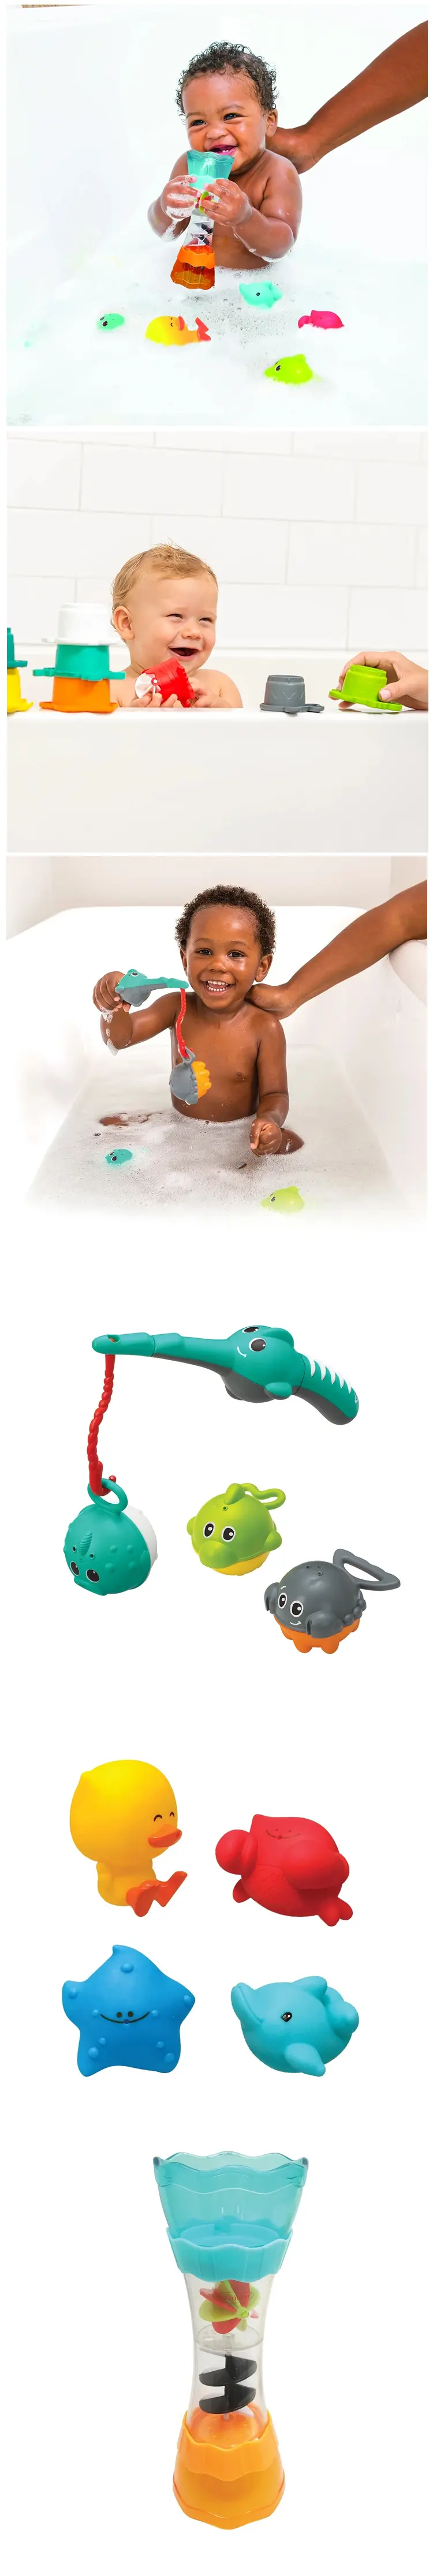 infantino 洗澡玩具套裝